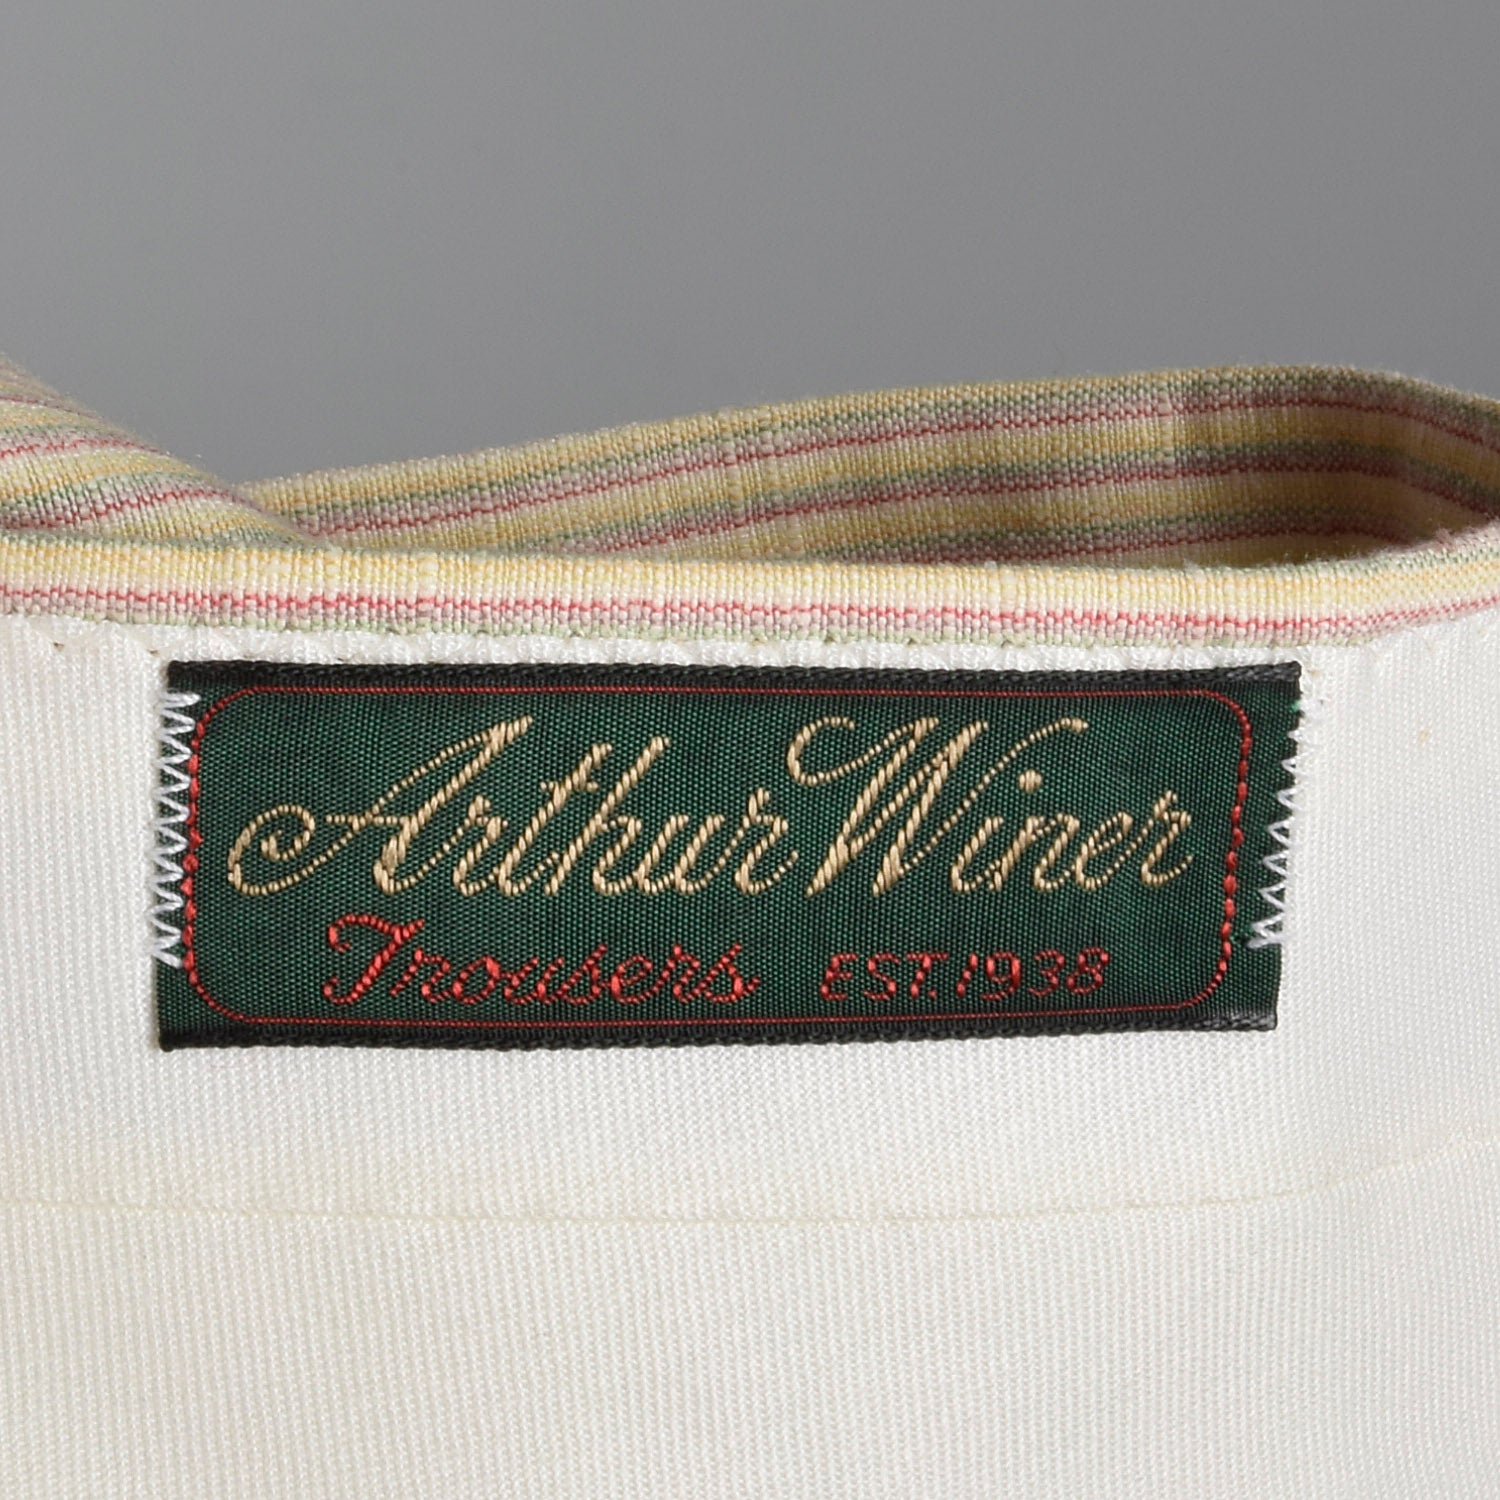 1970s Deadstock Striped Silk Blend Pleat Front Pants